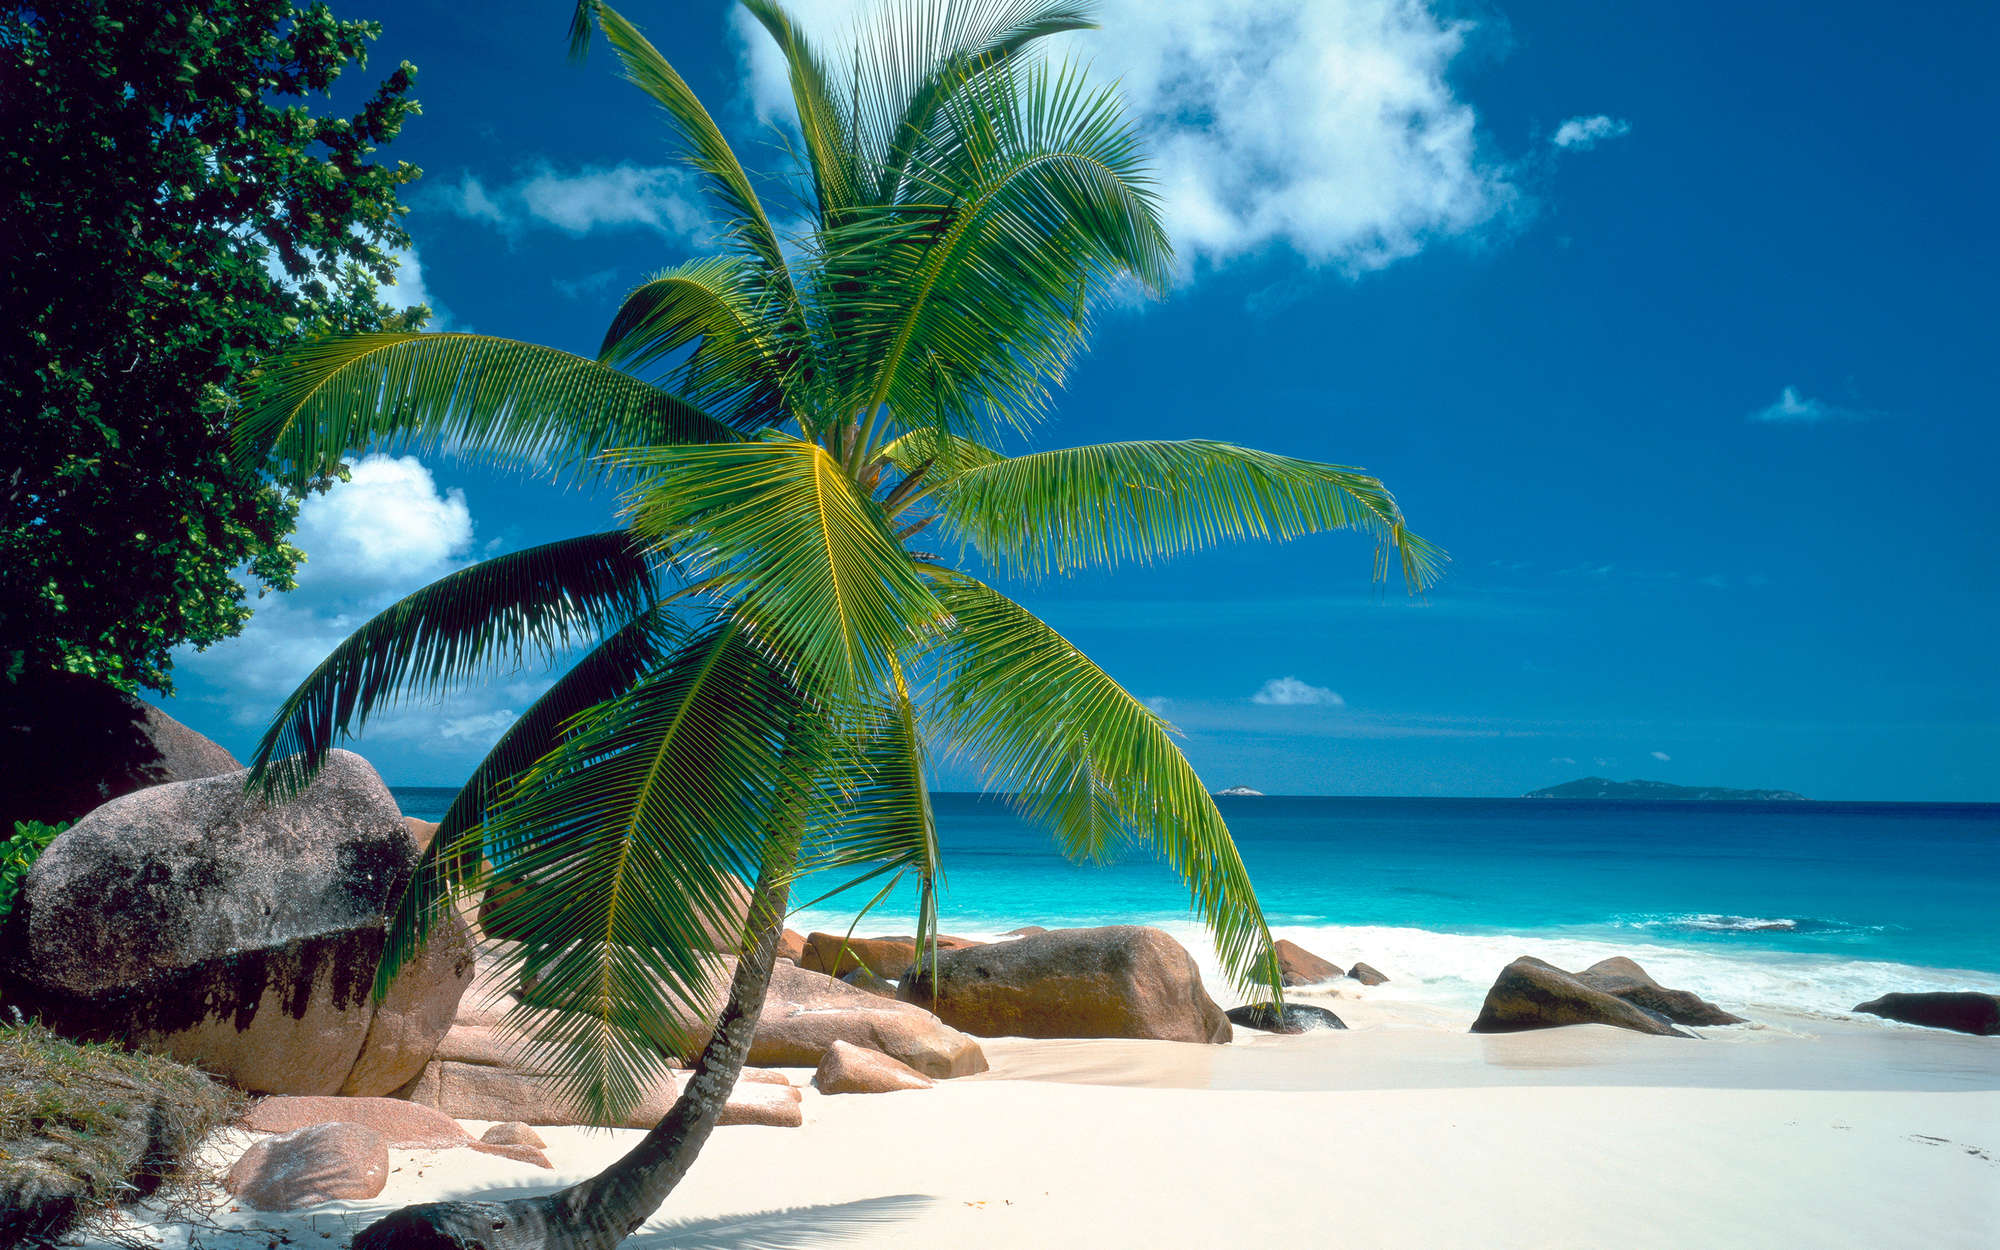             Strand met palmboom behang - structuurvlies
        